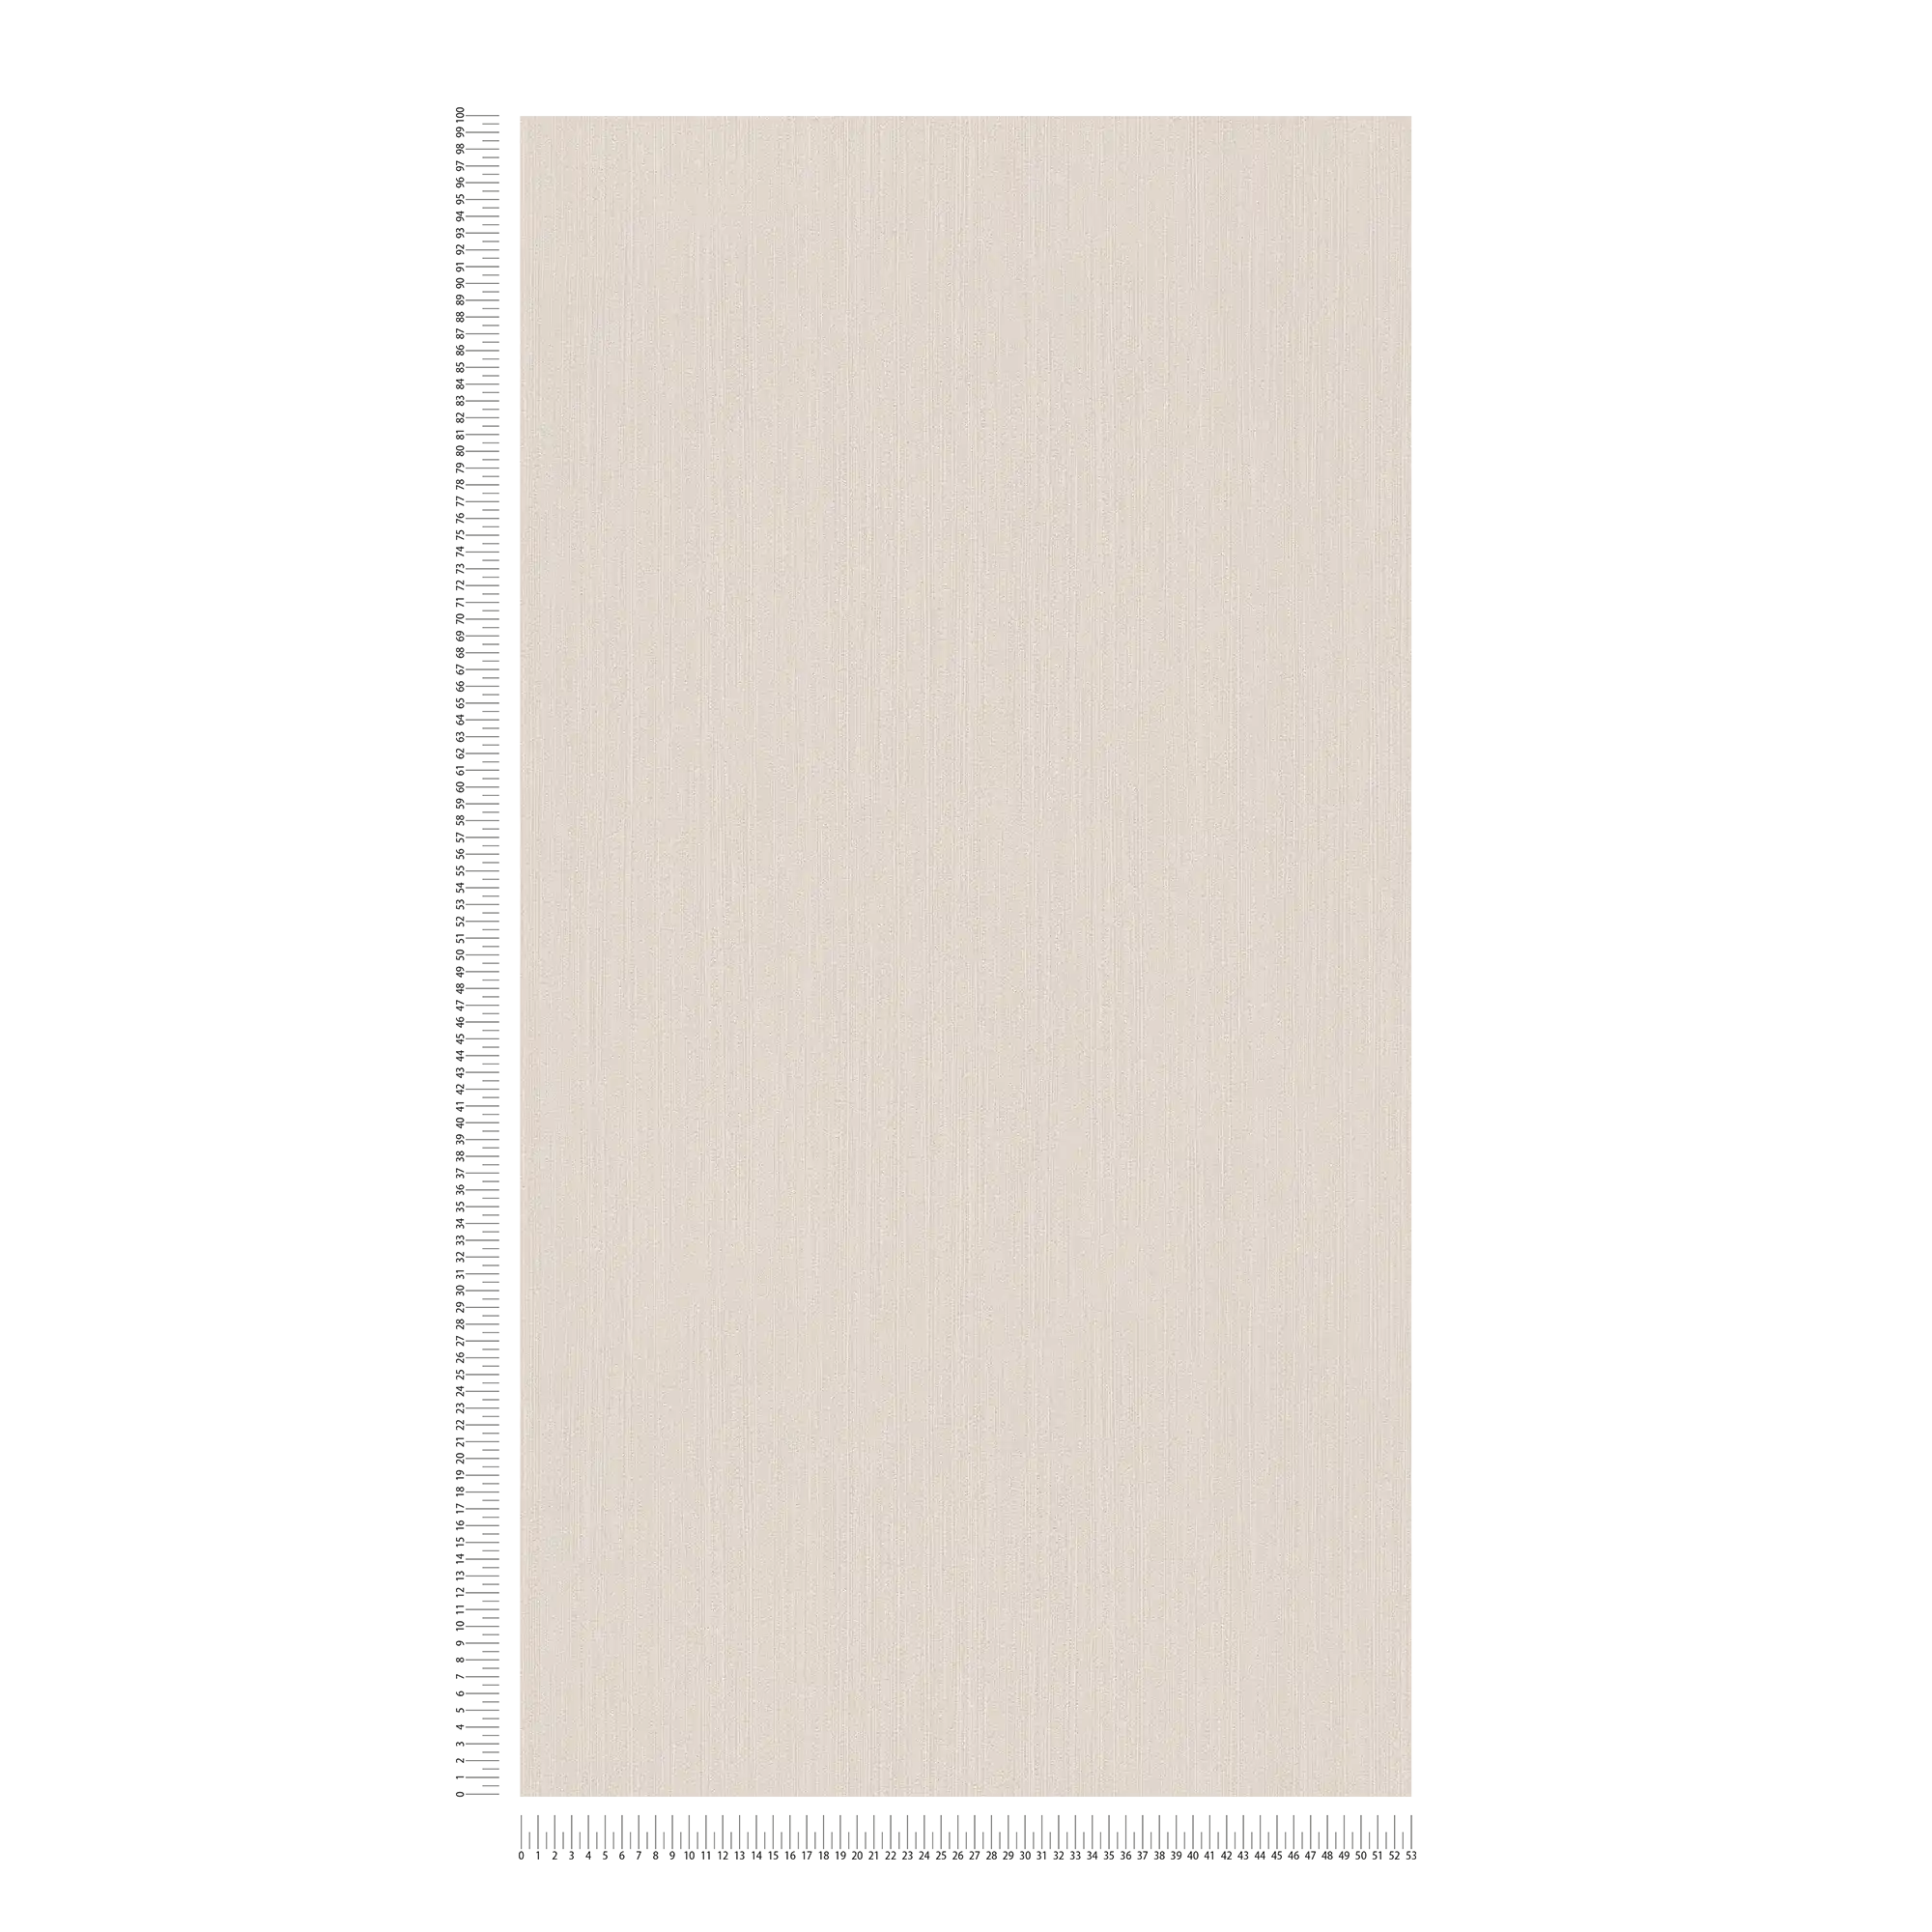             Cream beige non-woven wallpaper with subtle hatching - beige
        